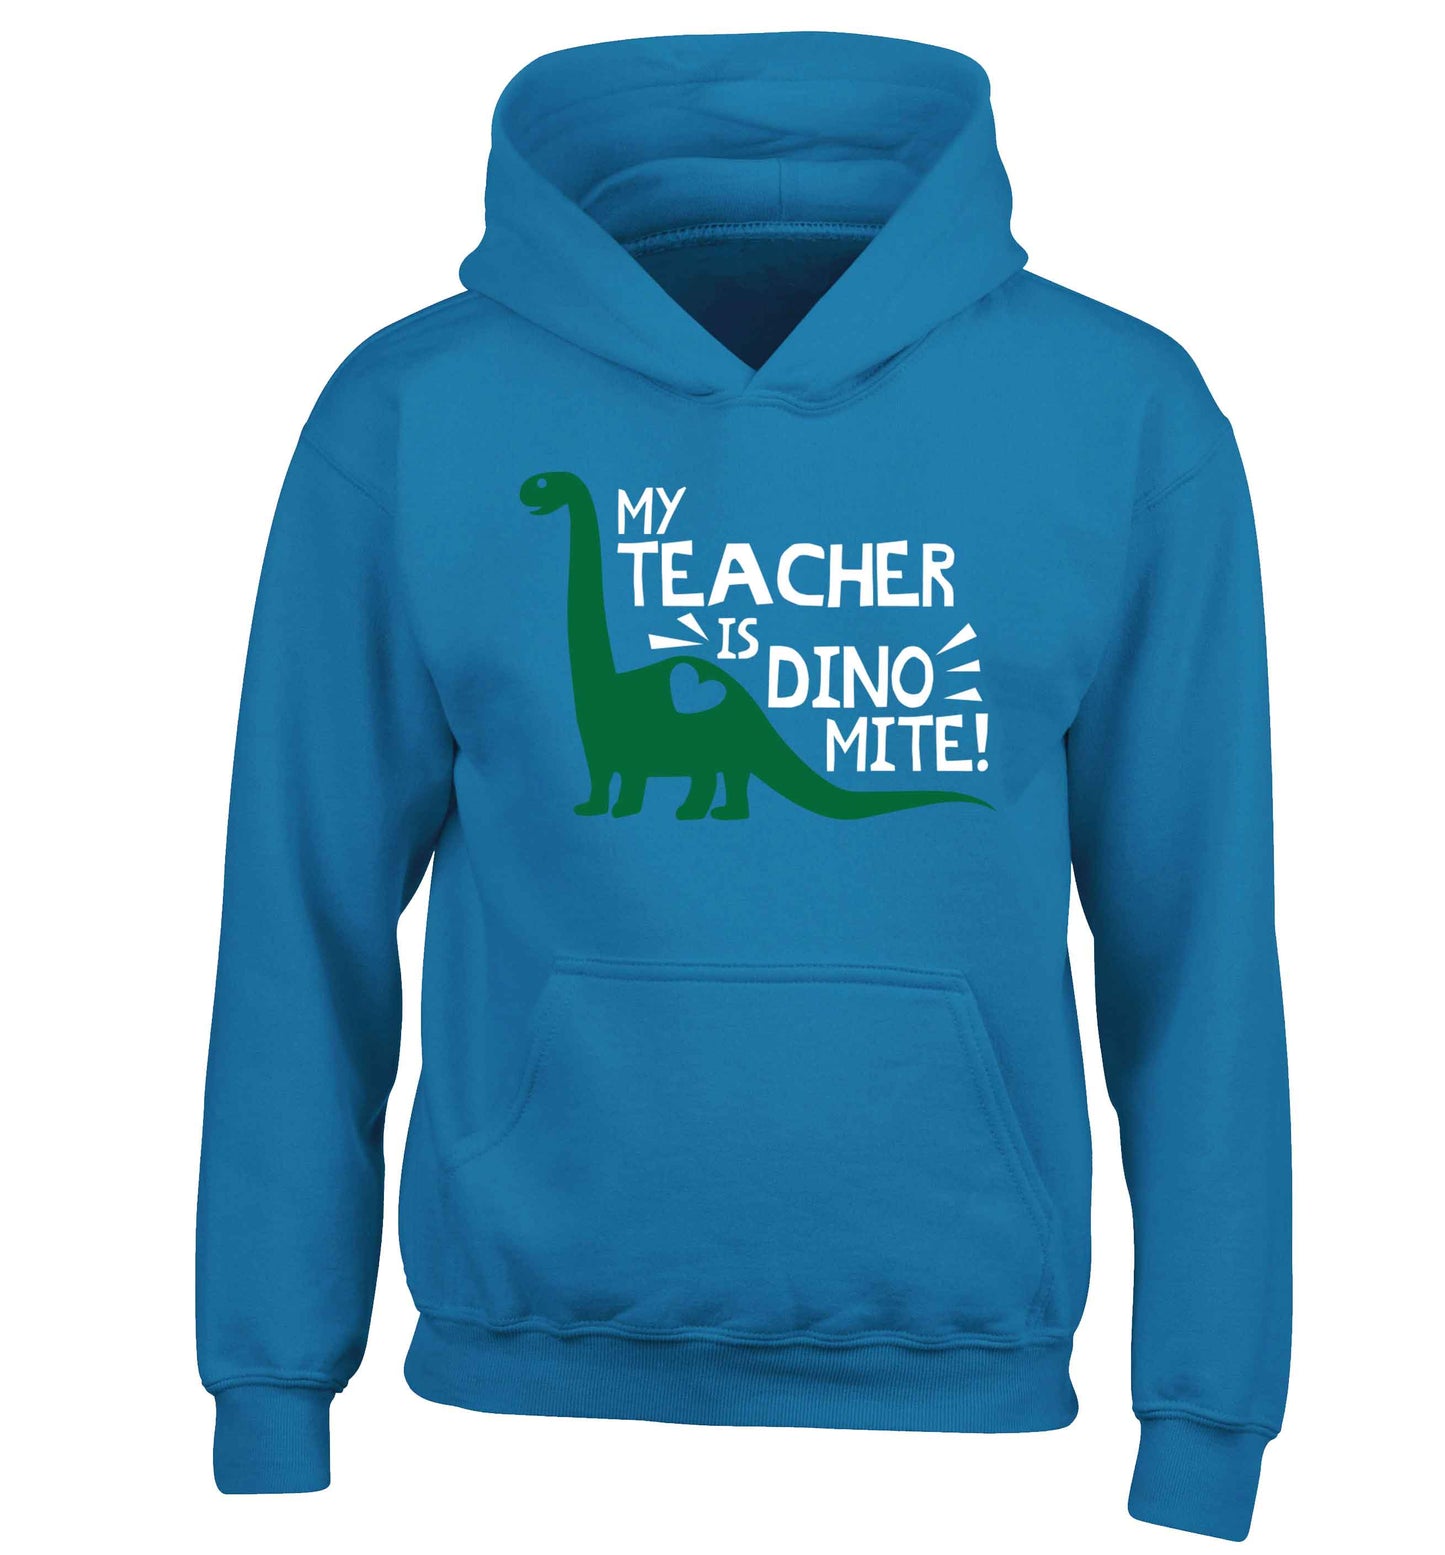 My teacher is dinomite! children's blue hoodie 12-13 Years